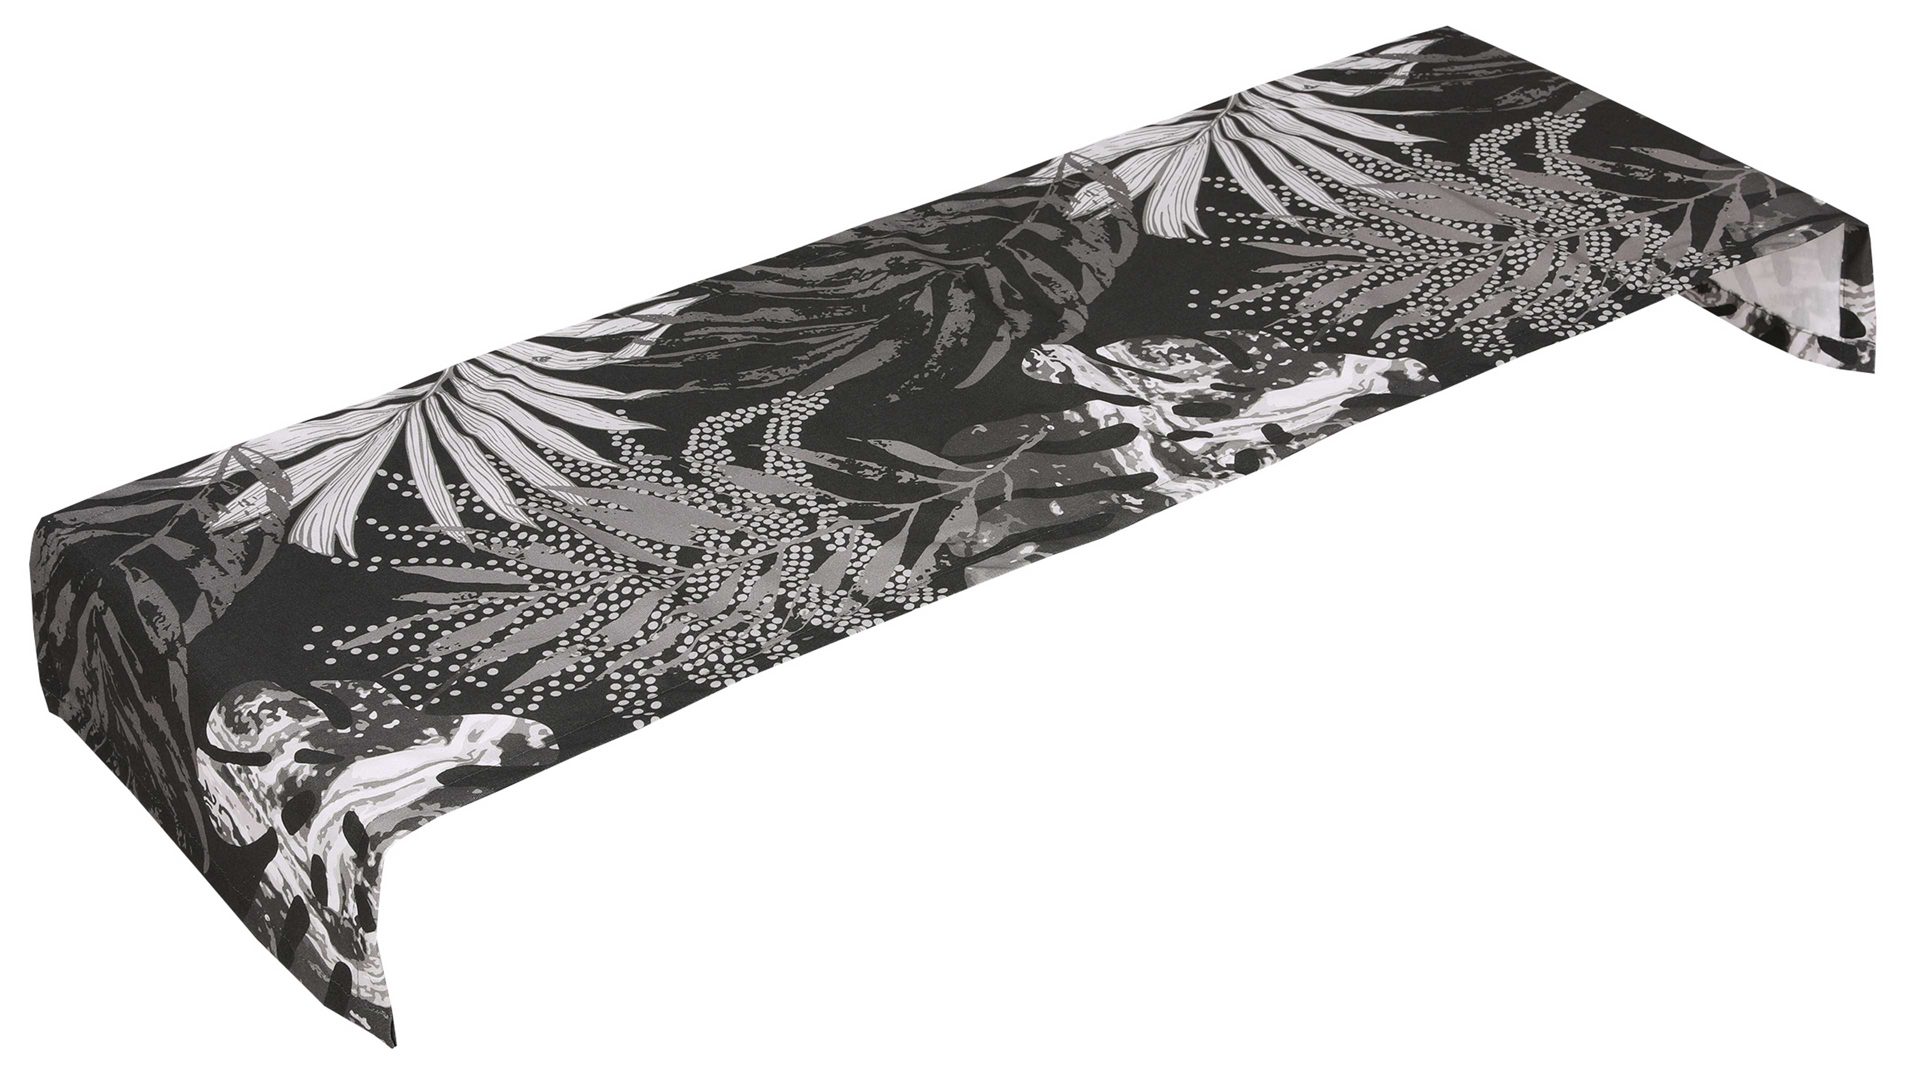 Tischläufer Go-de textil aus Stoff in Schwarz GO-DE Textil-Serie 19 - Tischläufer schwarz-weißes Blätterdessin - ca. 140 x 40 cm